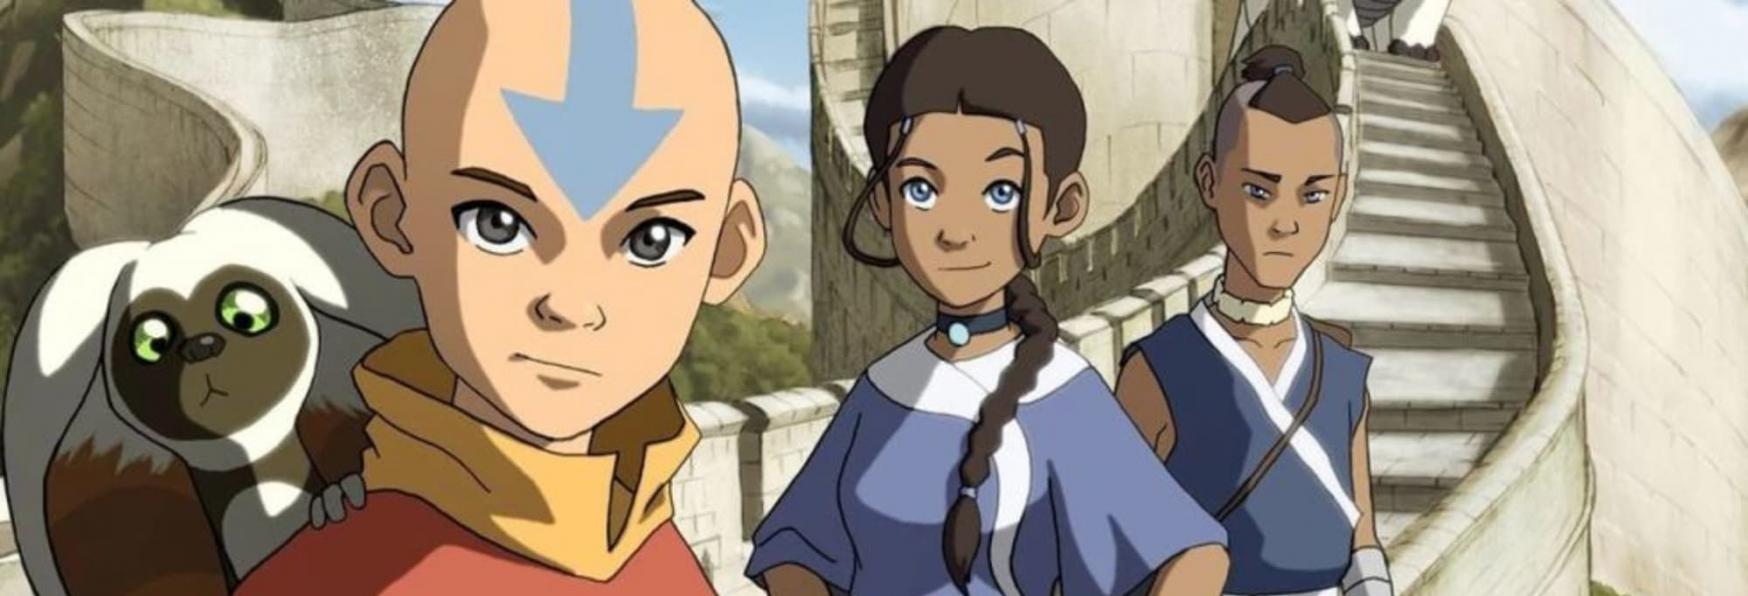 Avatar: The Last Airbender - Trovata l'Interprete della Principessa Yue nella Serie Live-Action di Netflix?